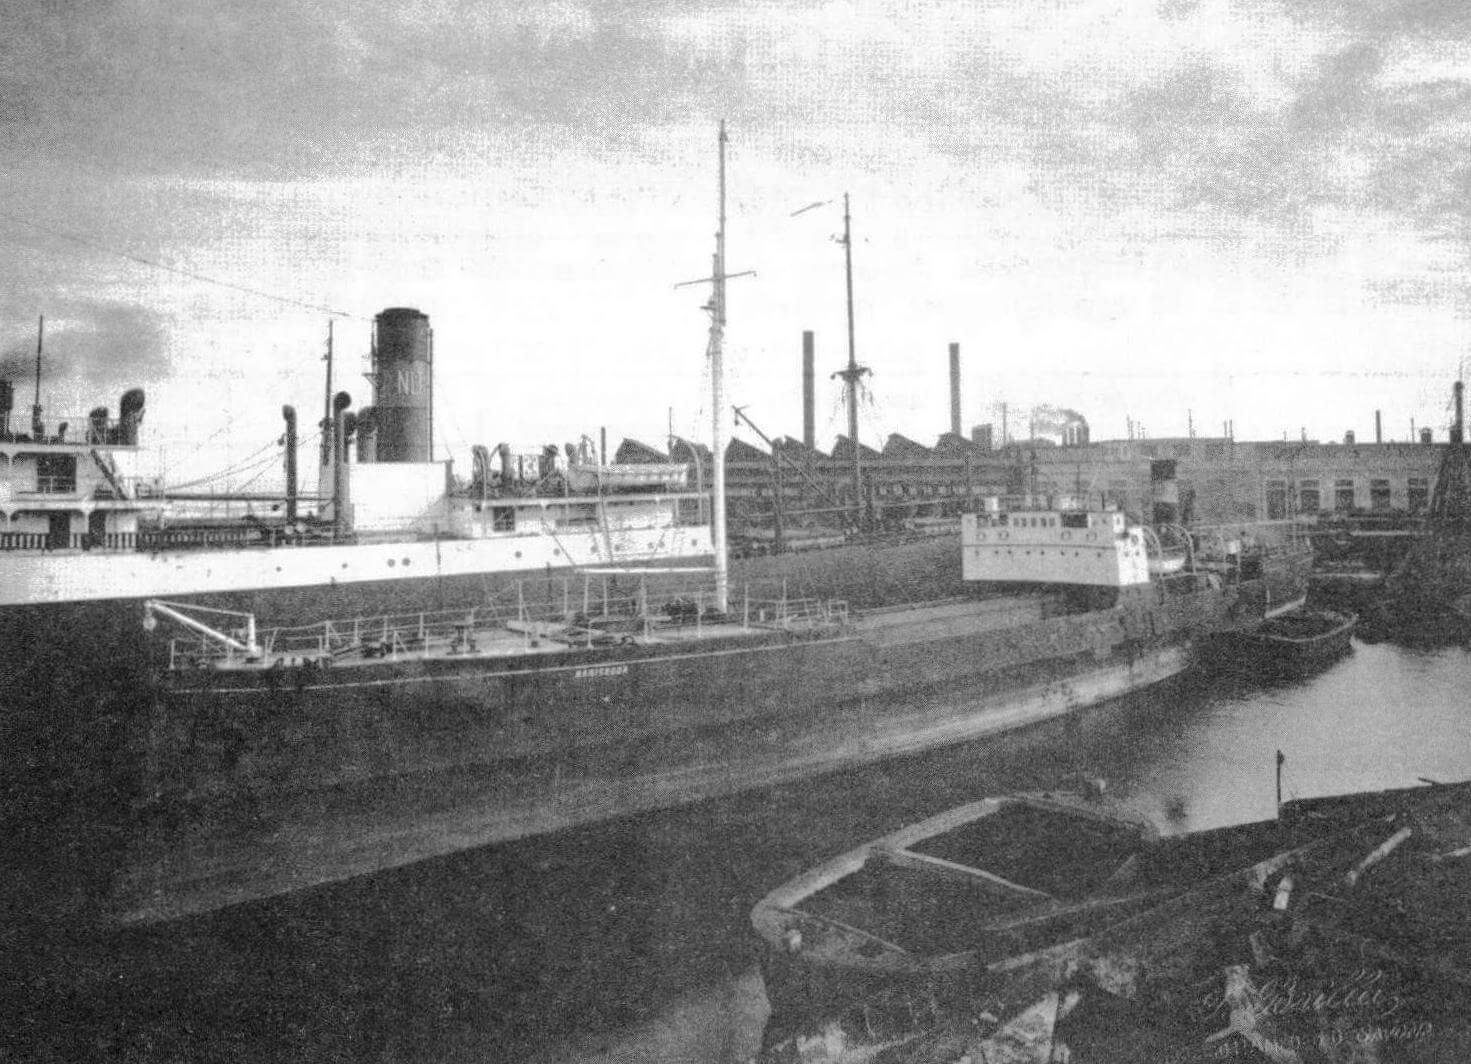 Танкер «Мариседда» (бывший бронепалубный крейсер «Пьемонт») незадолго до разделки на металл, 1932 год